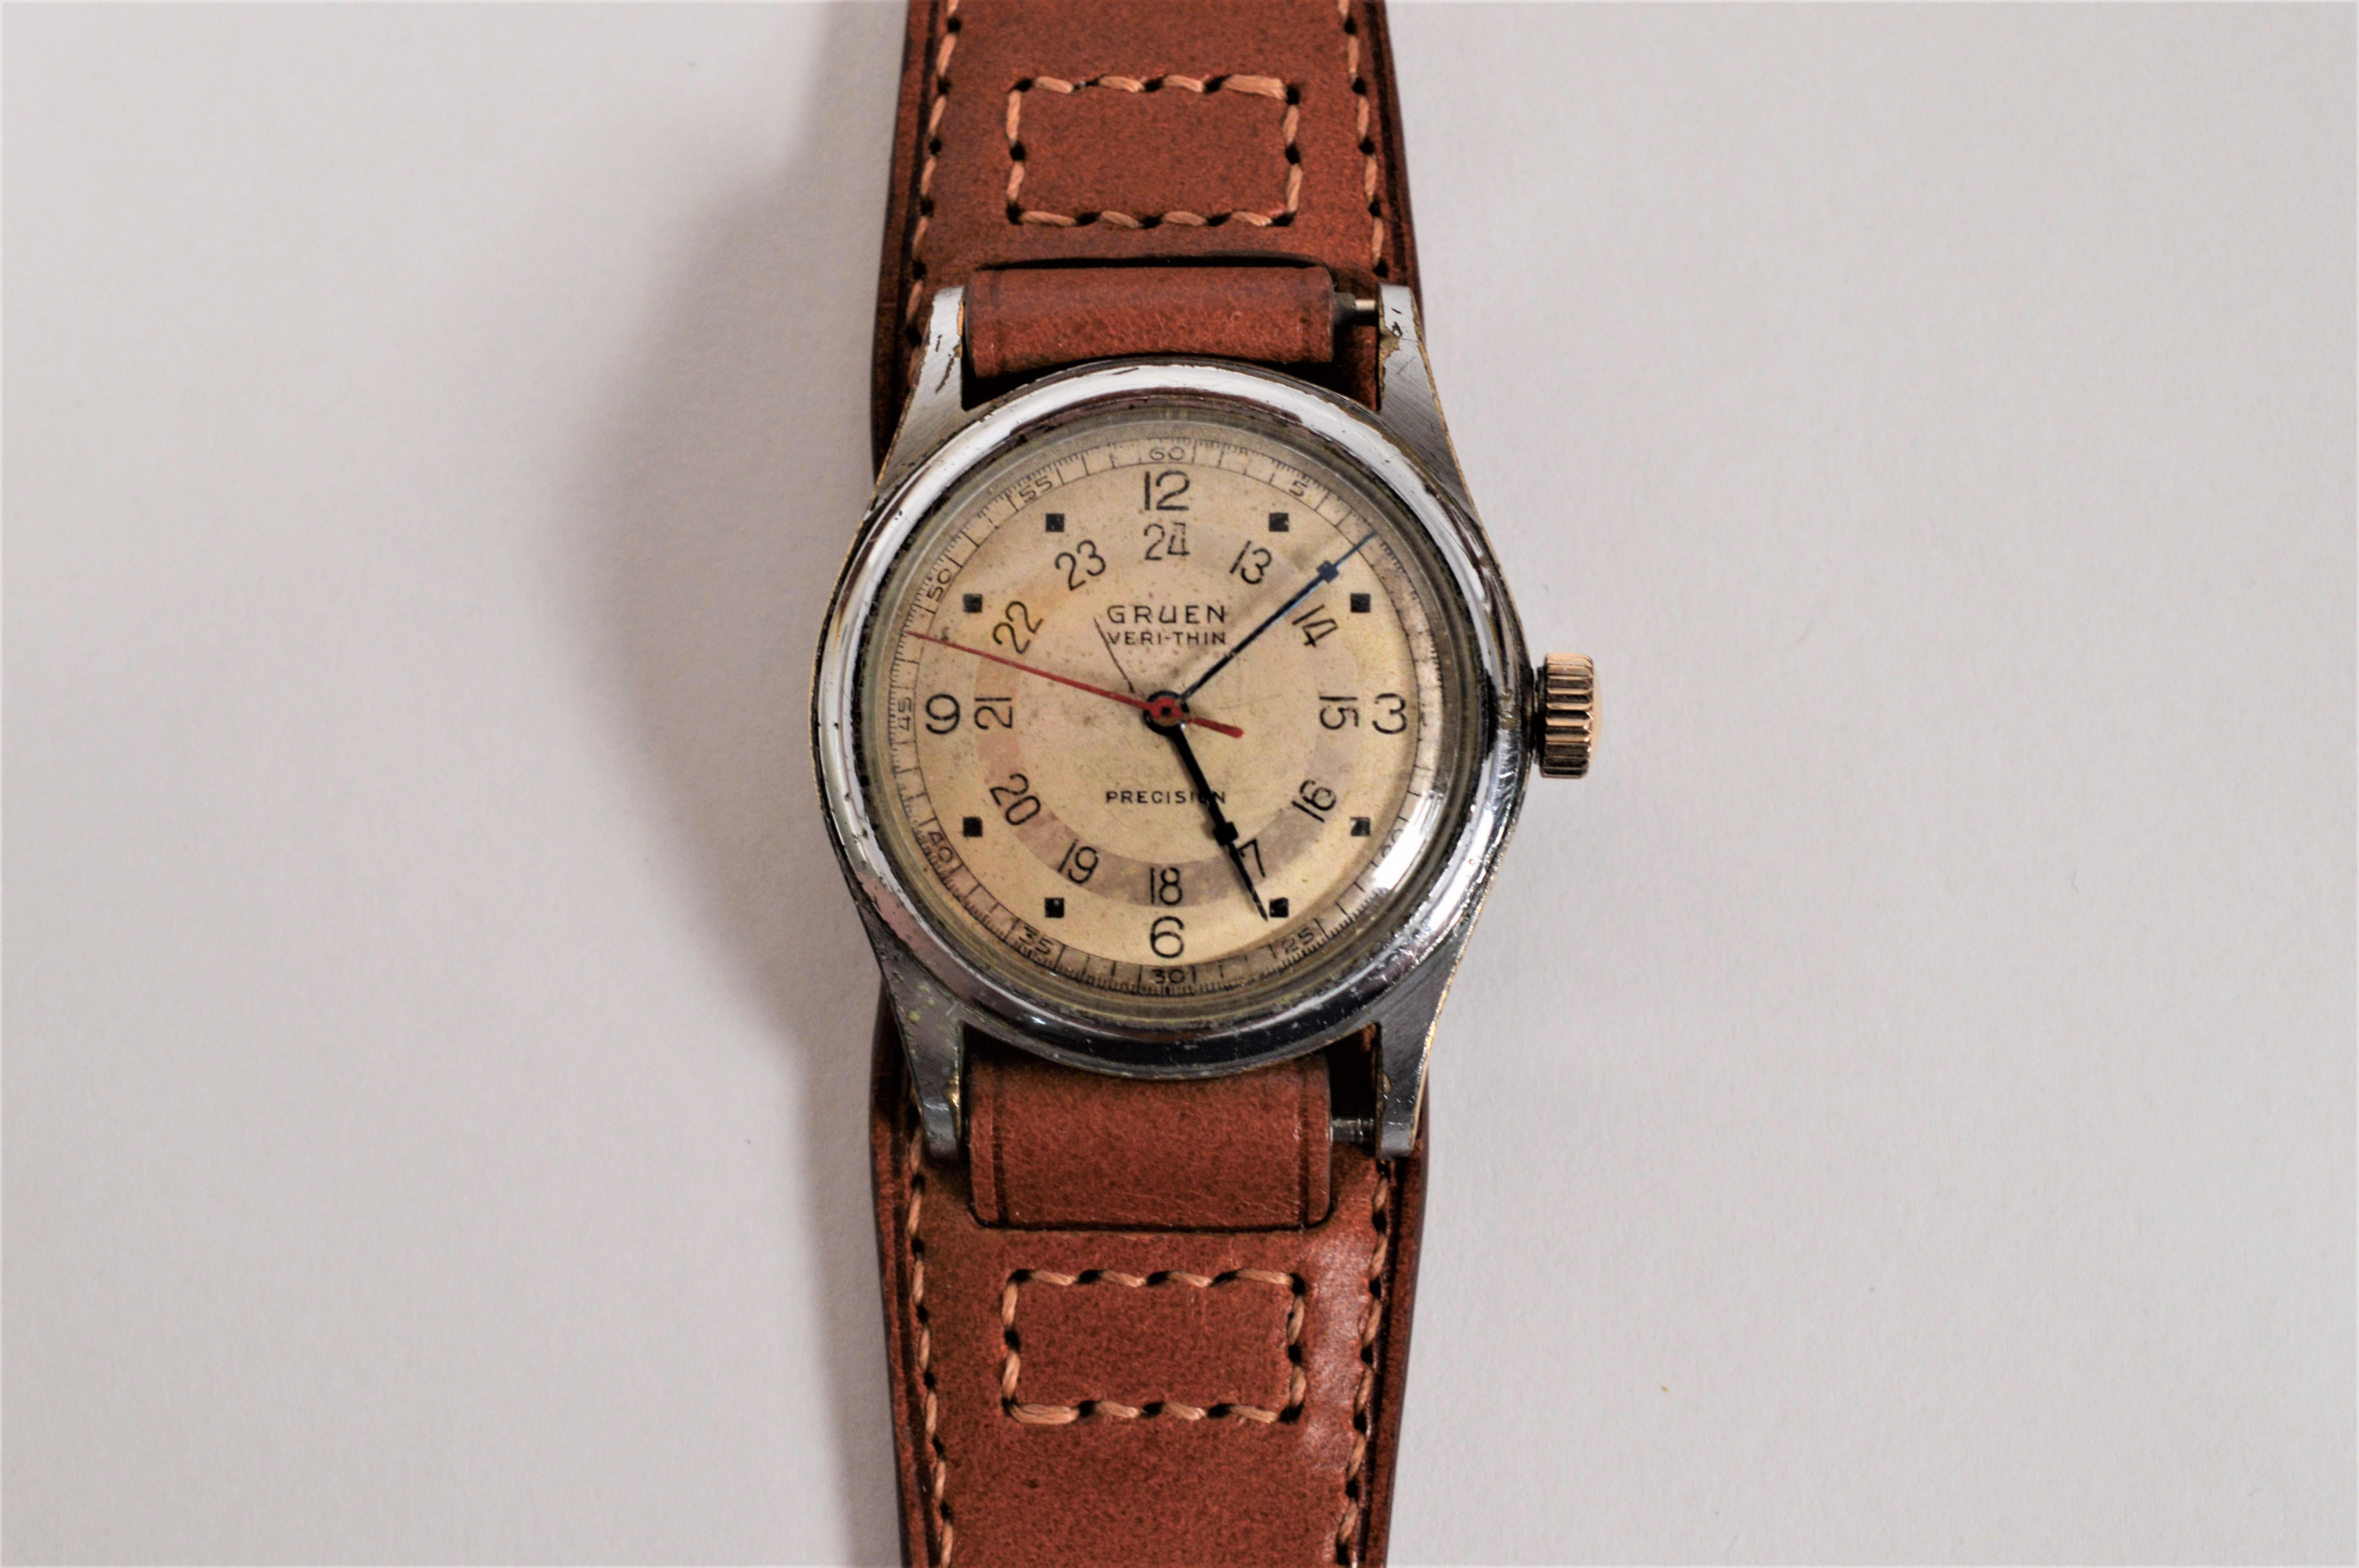 Ein Vintage-Fund und in seinem ursprünglichen Zustand, genießen Sie diese circa 1940's Pan American Wrist Watch mit Veri Thin Bewegung entwickelt und hergestellt von Gruen Watch Co.  Als amerikanisches Unternehmen war Gruen bis Mitte des